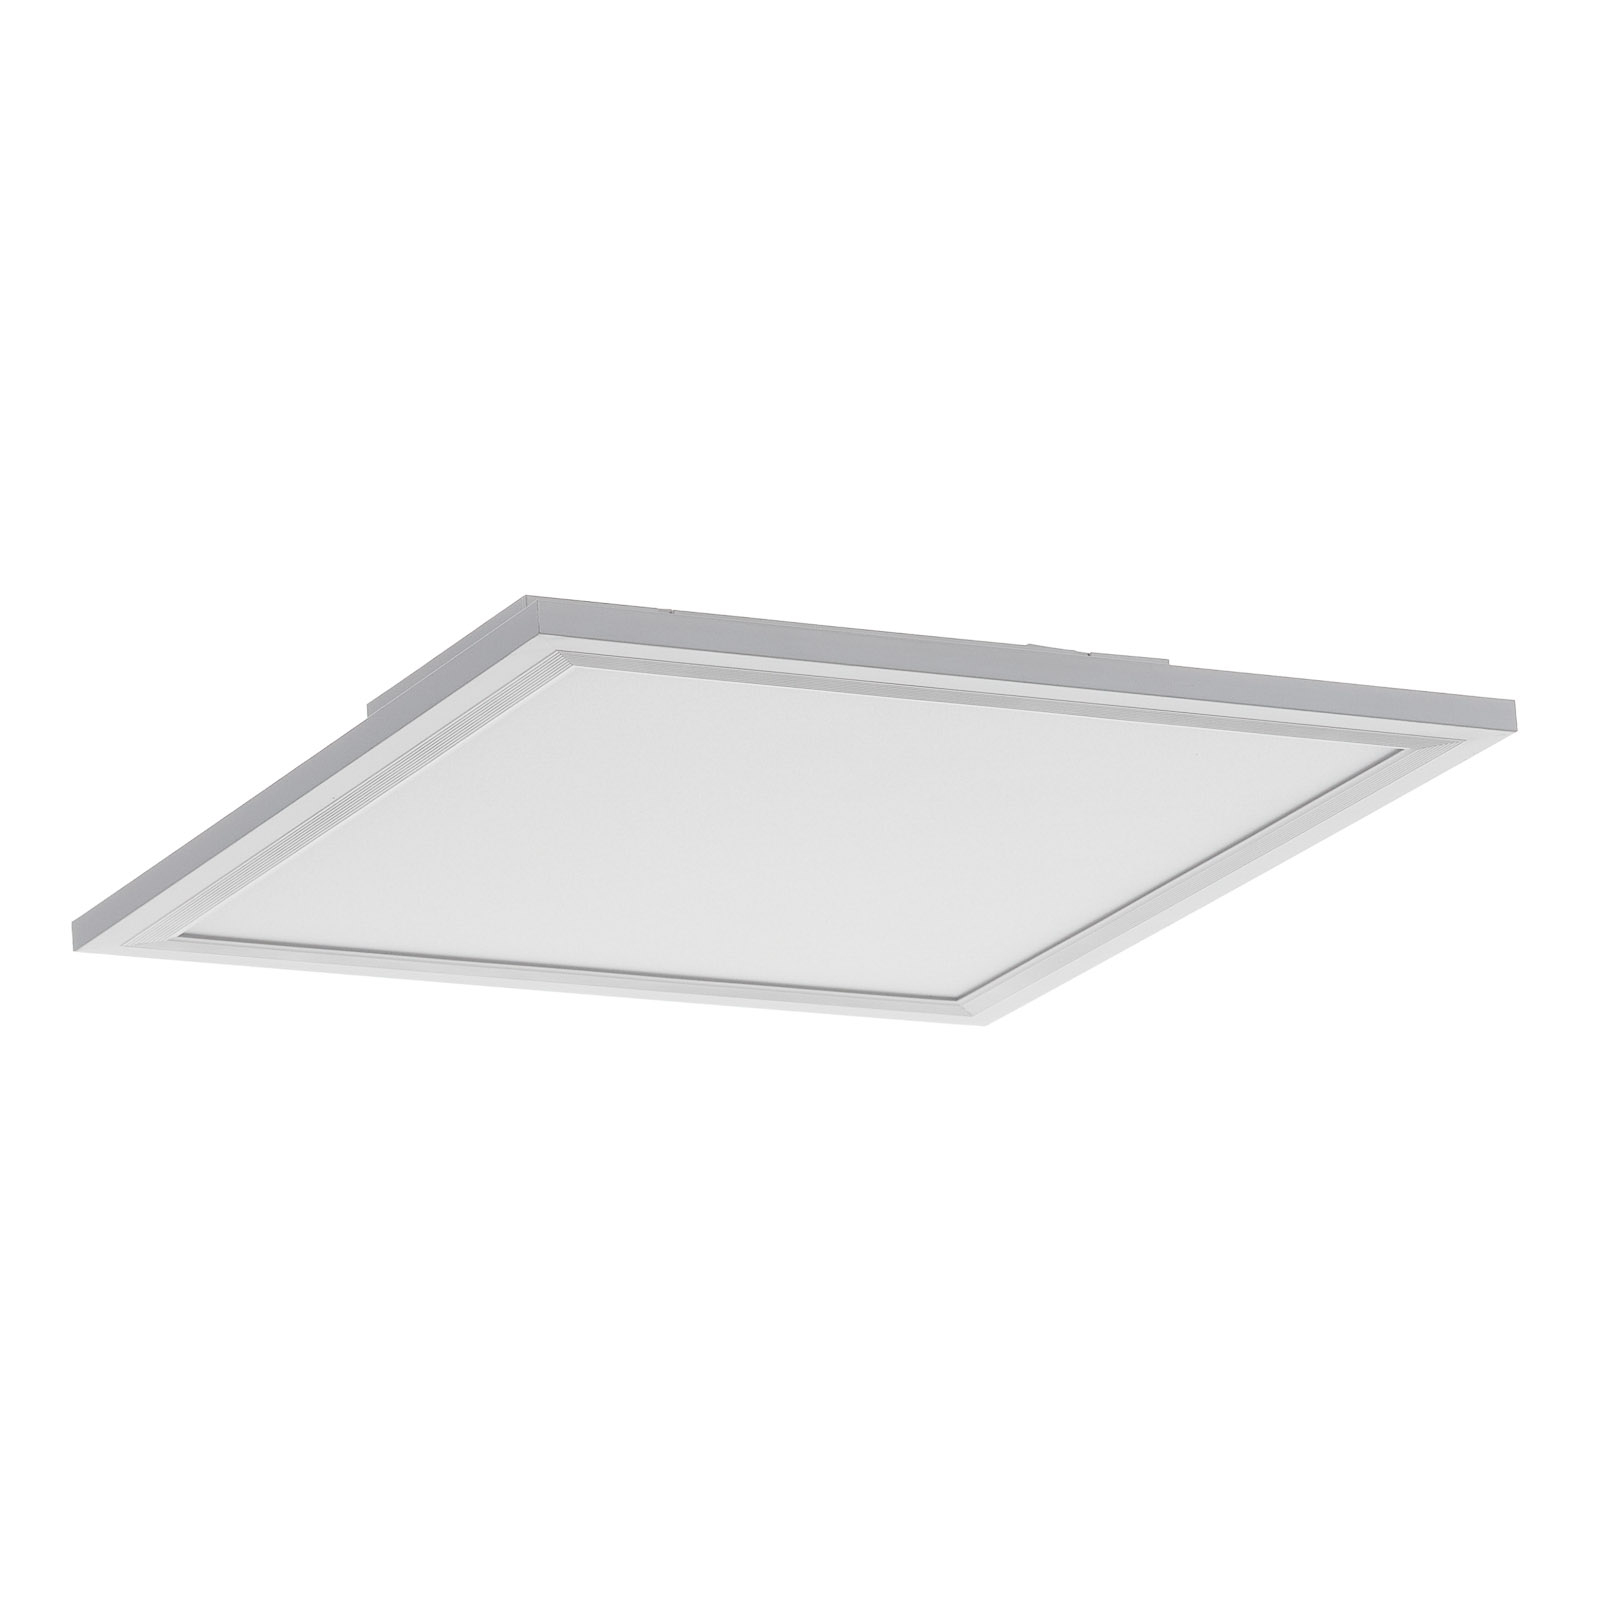 Φωτιστικό οροφής LED Piatto, αισθητήρας, 29,5 x 29,5 cm